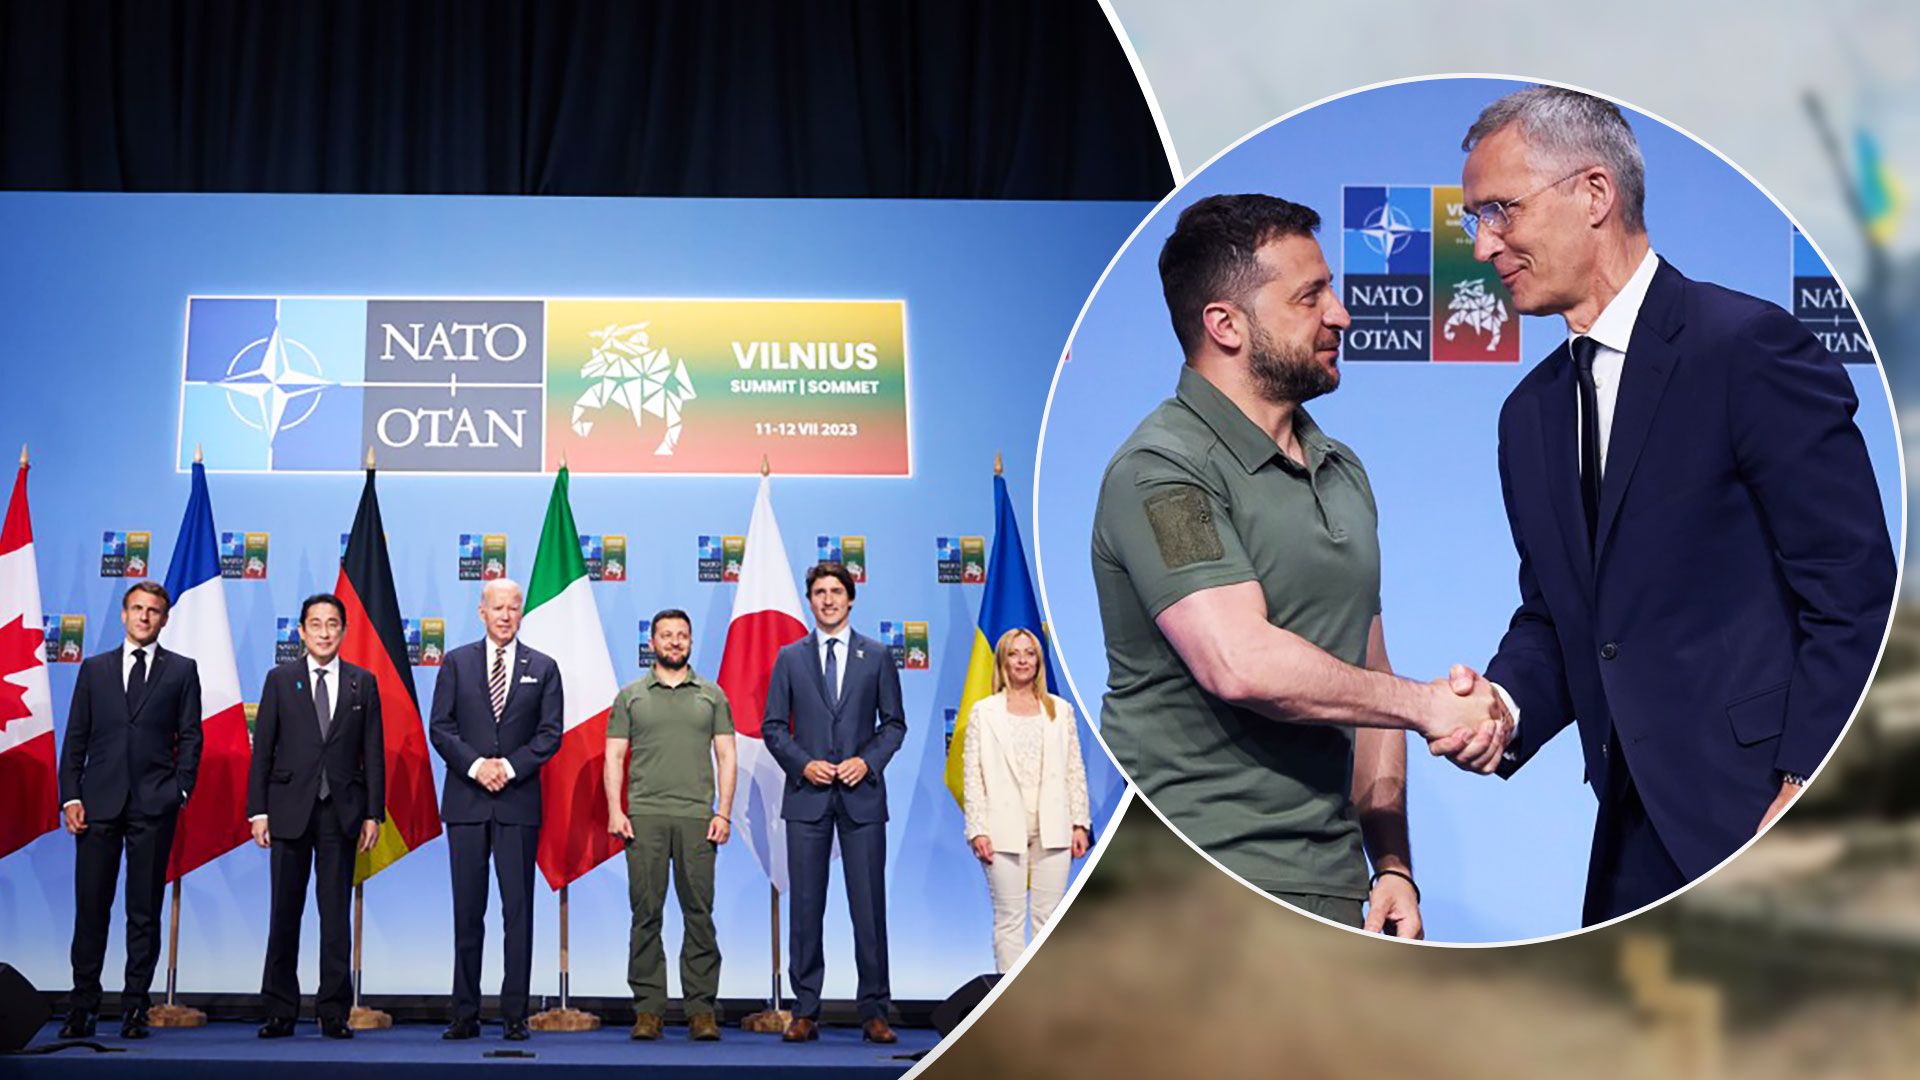 Що Україна отримала на саміті НАТО у Вільнюсі - комюніке саміту НАТО про Україну - 24 Канал